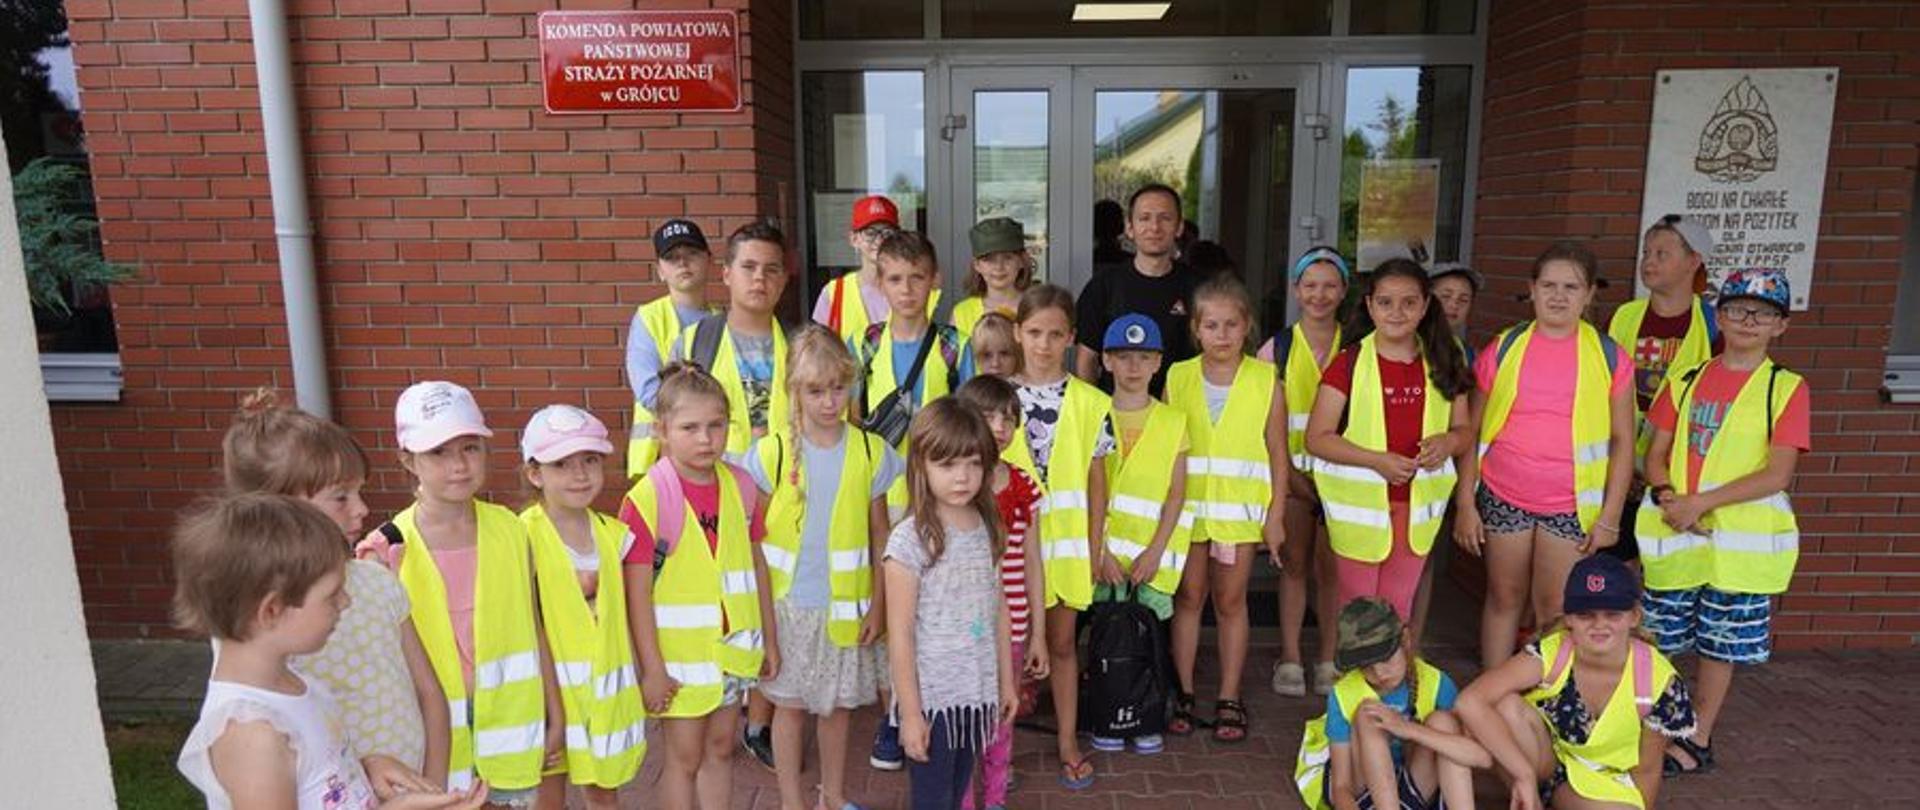 Wizyta dzieci w ramach letniej akcji grójeckiego GOK